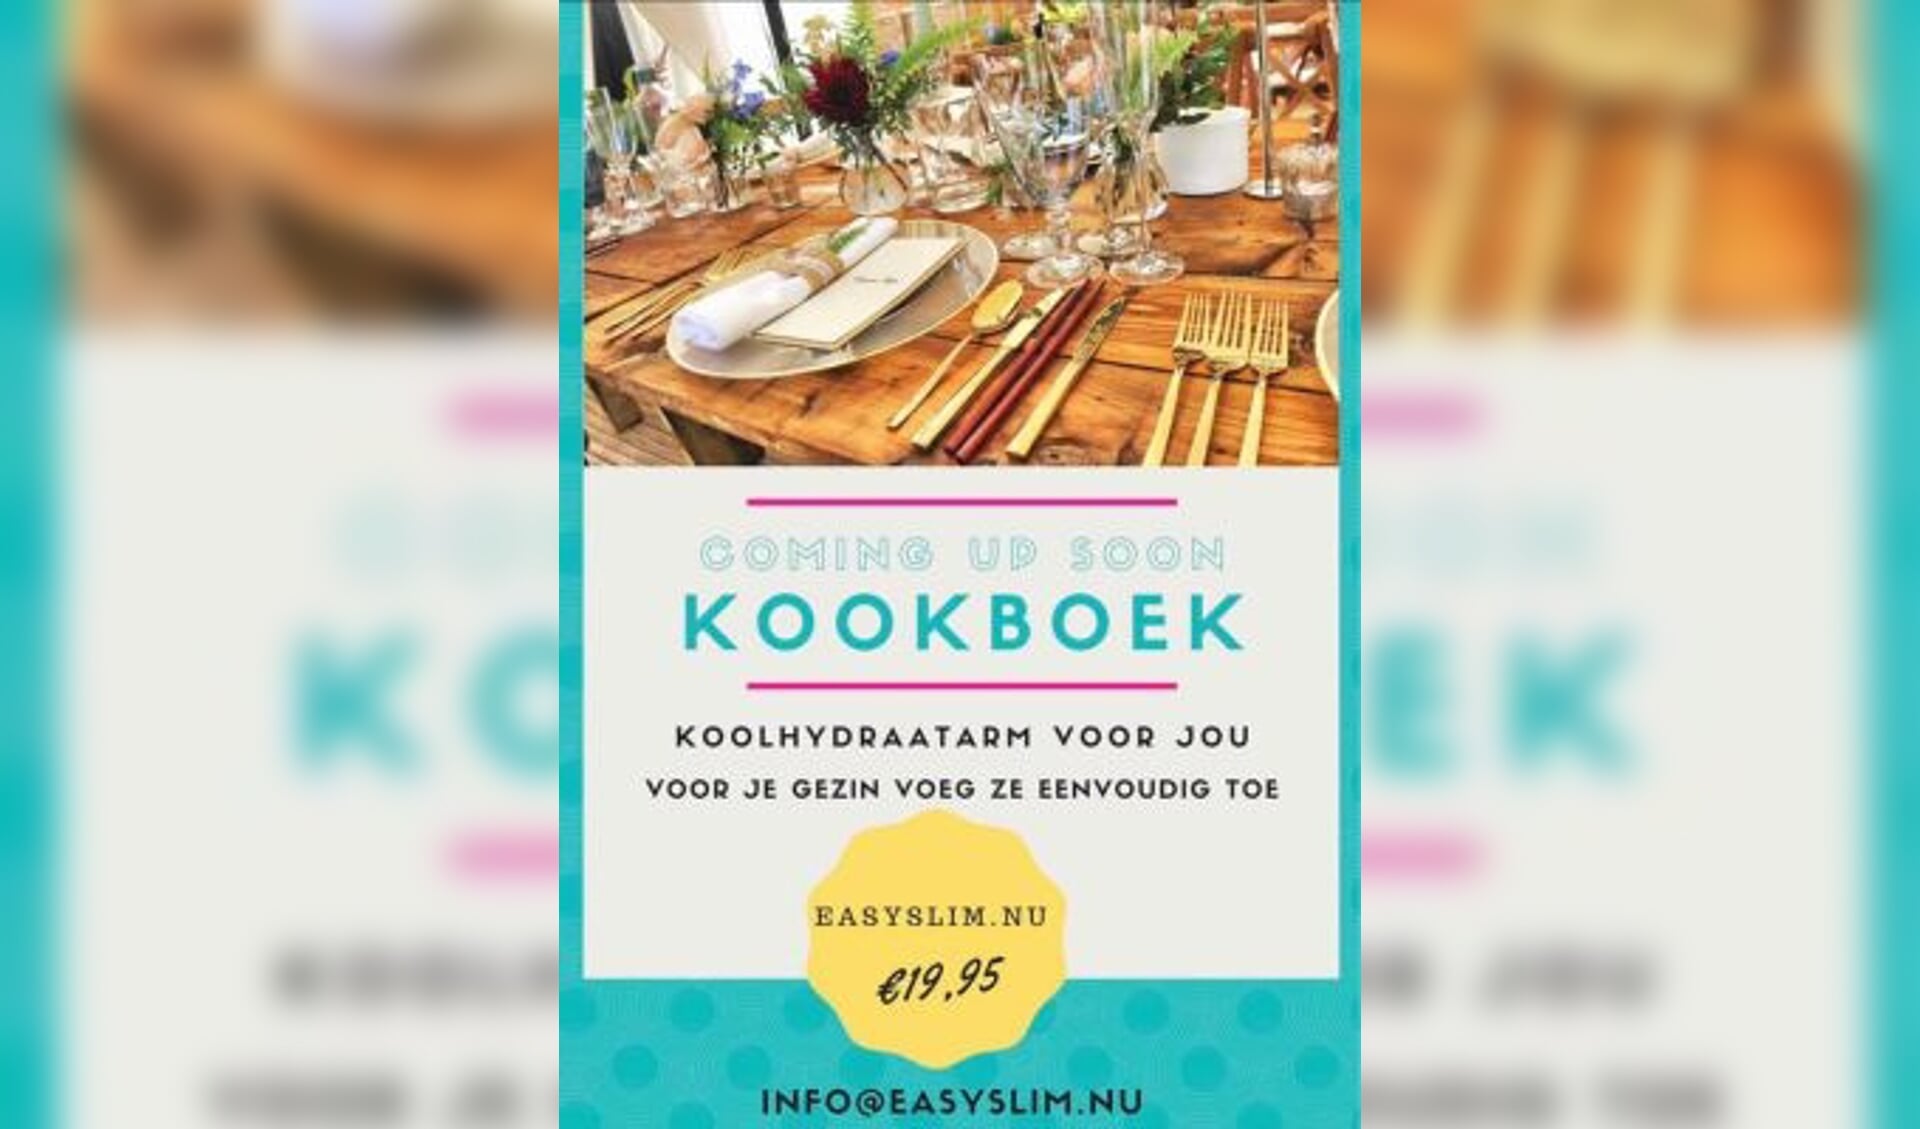 De cover van het bewuste kookboek.